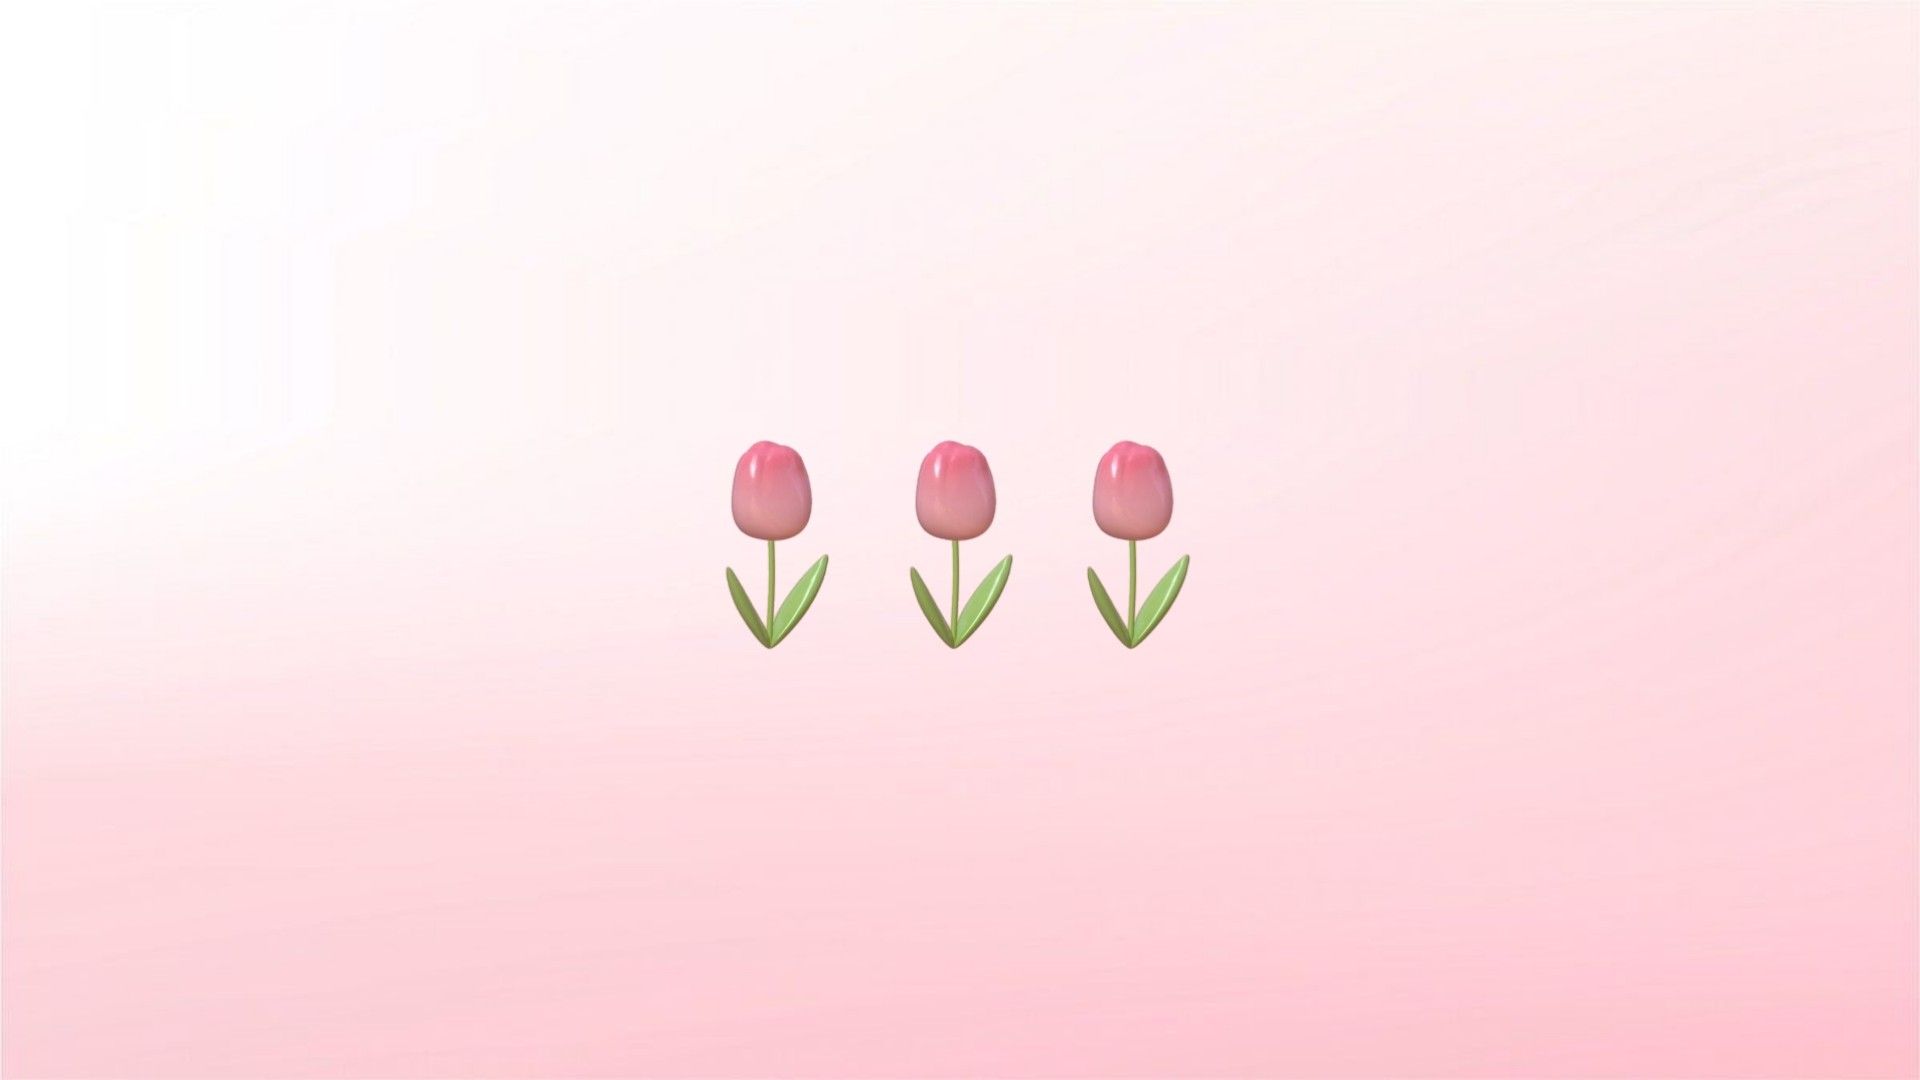 ࣪⊹ coquette wallpaper ˖ ࣪⊹. Flower desktop wallpaper, Pink wallpaper laptop, Pink wallpaper desktop